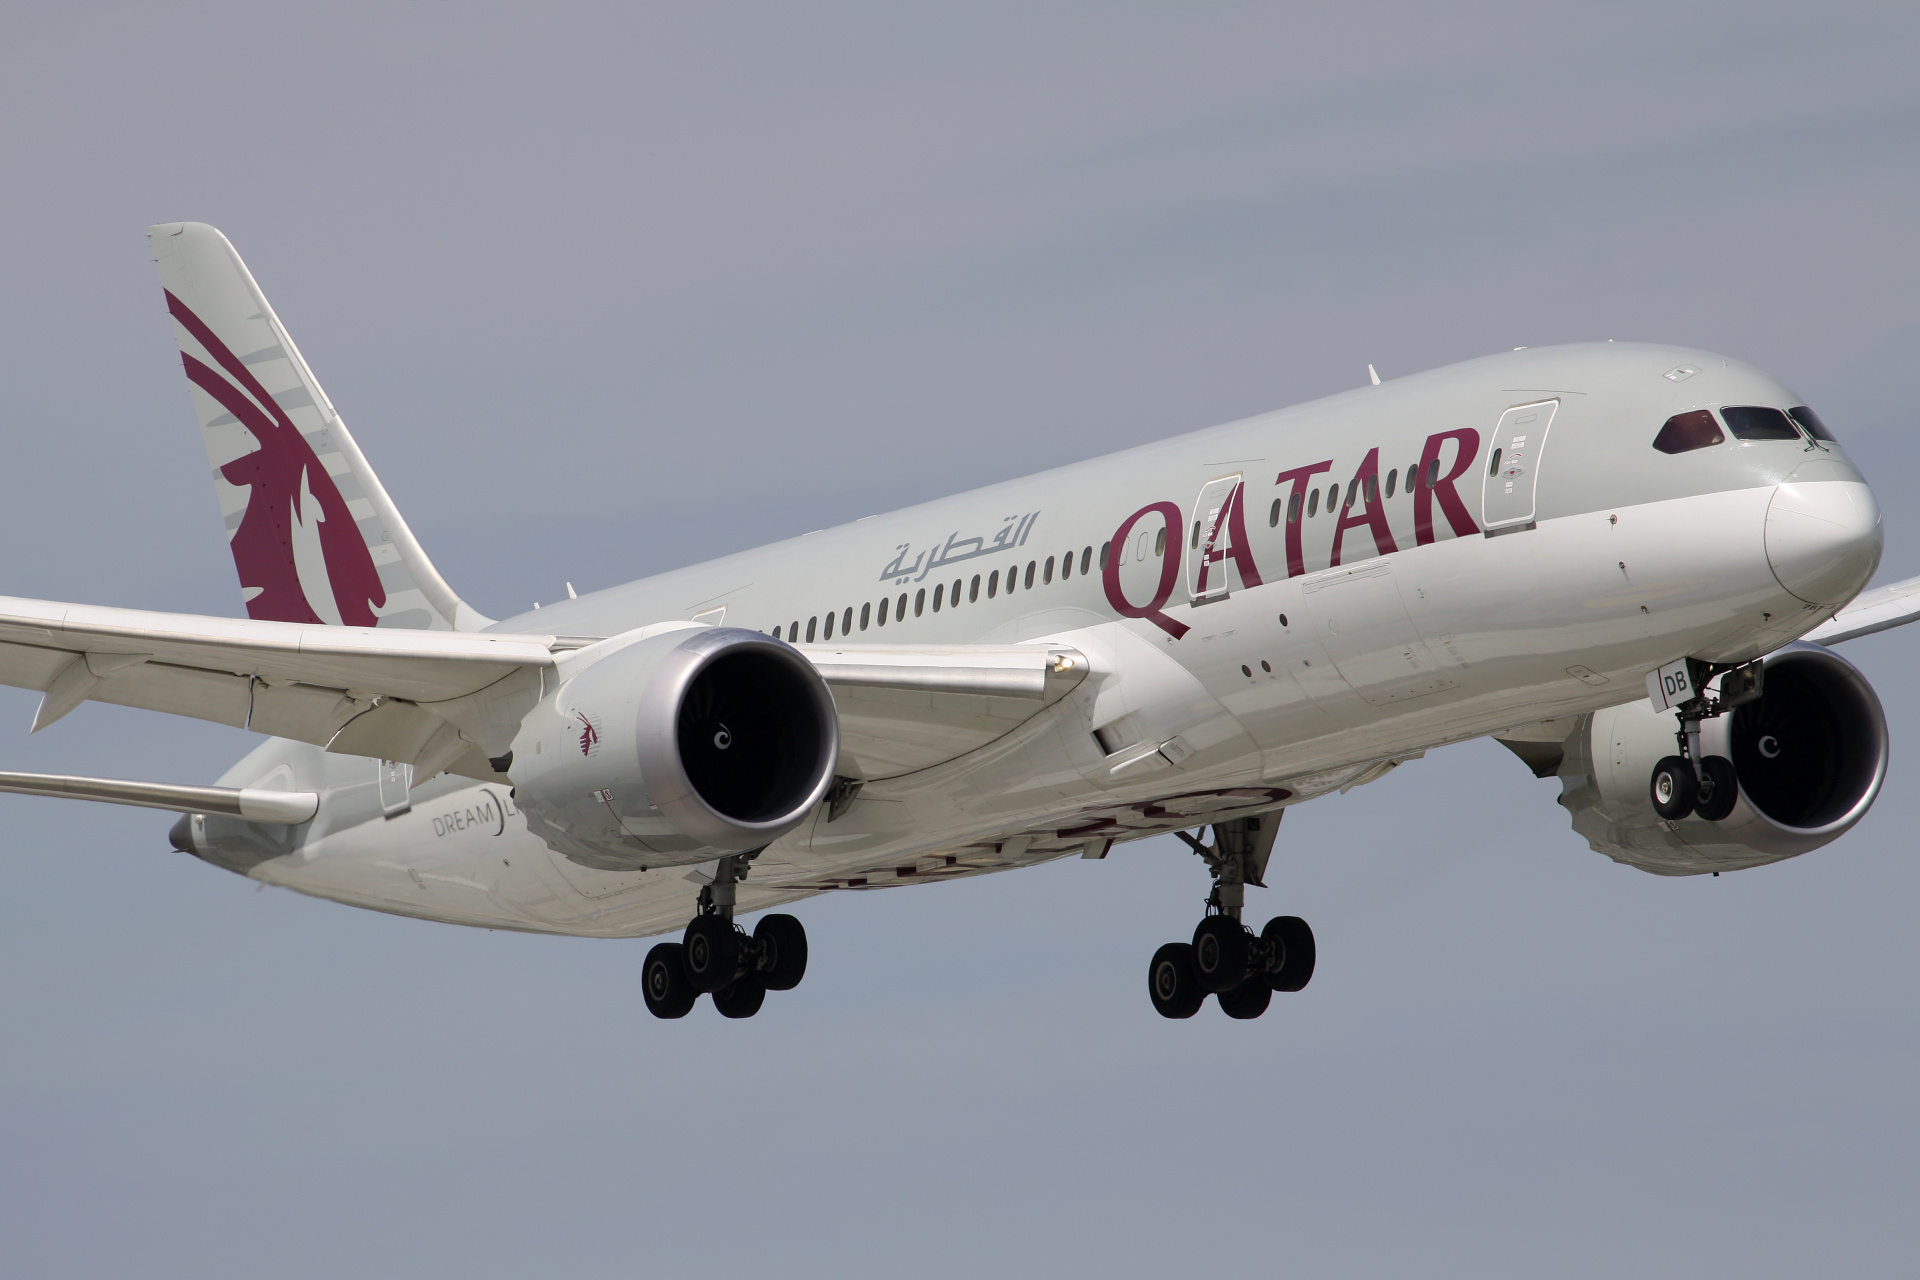 A7-BDB (Aircraft » EPWA Spotting » Boeing 787-8 Dreamliner » Qatar Airways)